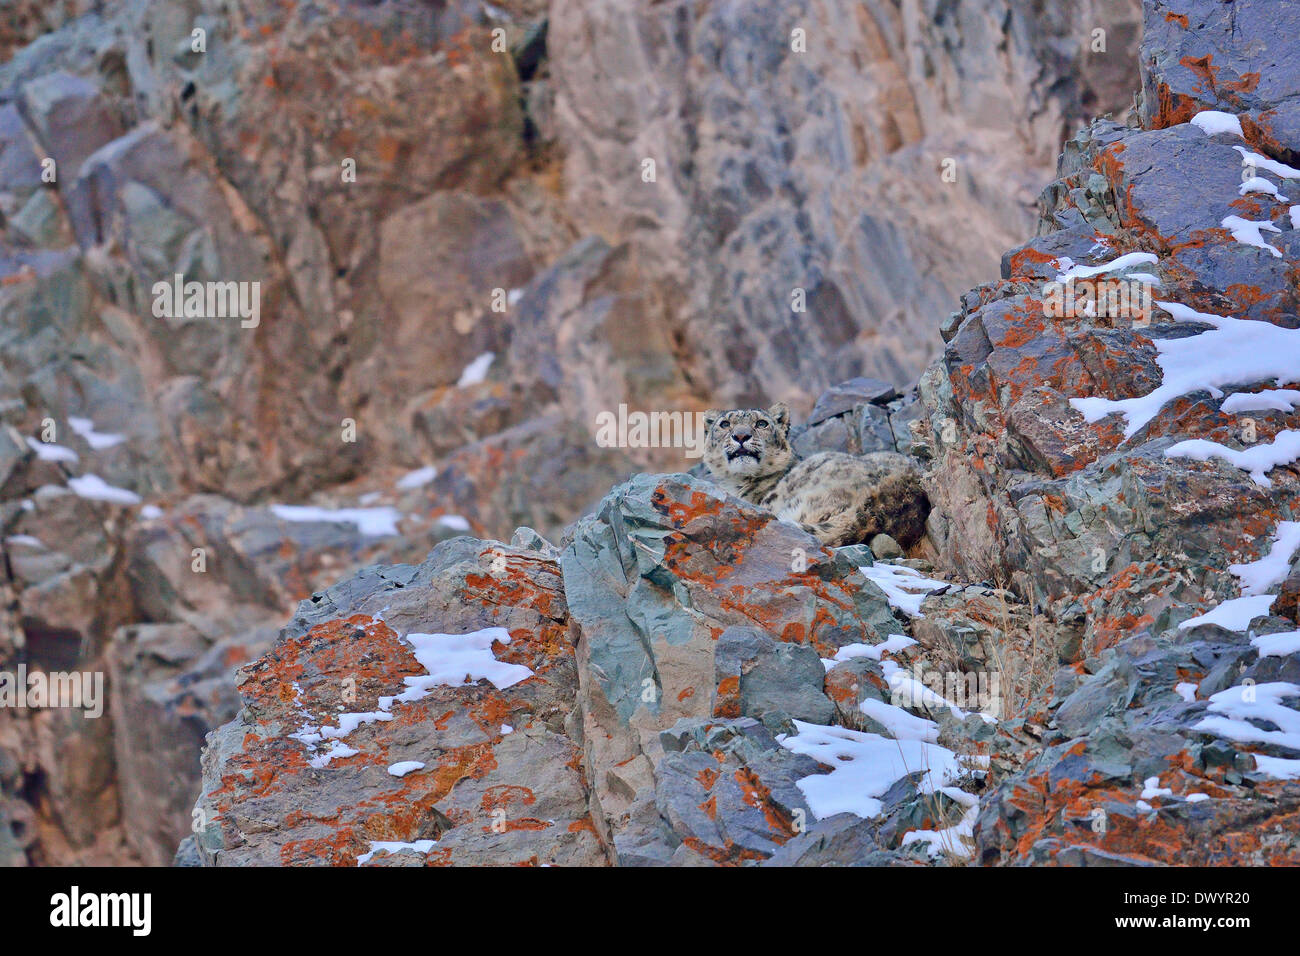 Snow Leopard (Panthera uncia Uncia uncia) ou reposant sur un rocher couvert de lichens dans Hemis national park, Ladakh, Inde Banque D'Images